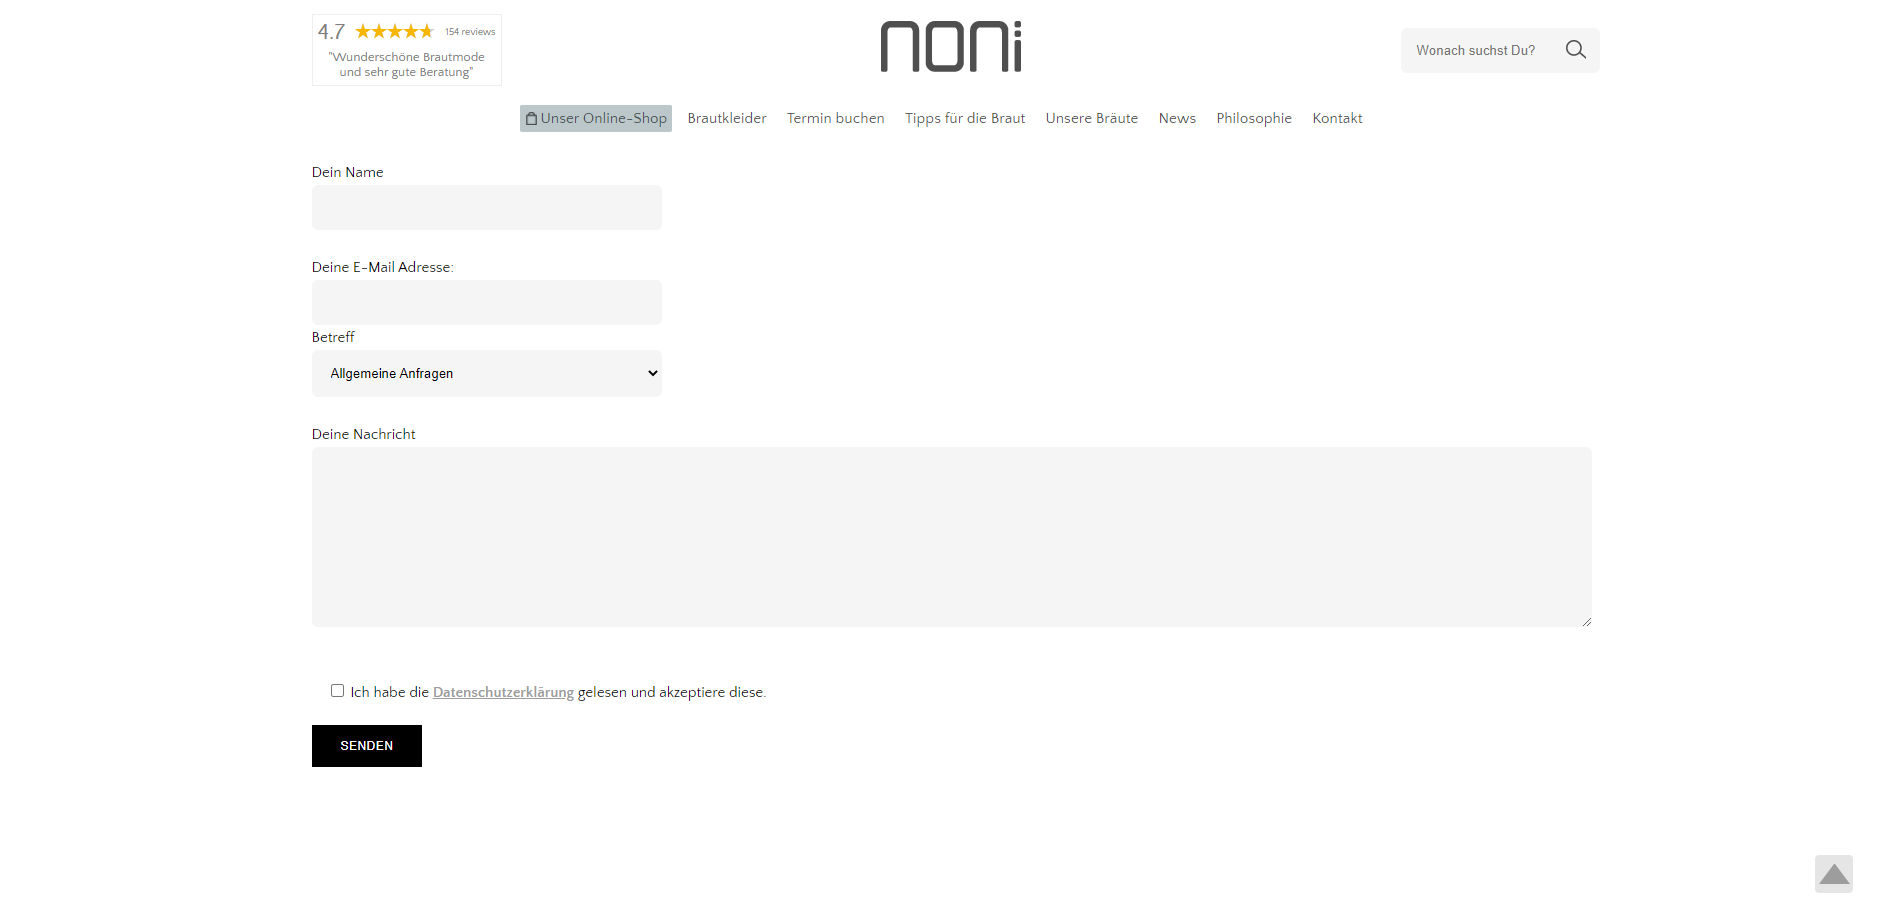 Das Kontaktformular von Noni mit einer Einverständnis-Abfrage zum Datenschutz